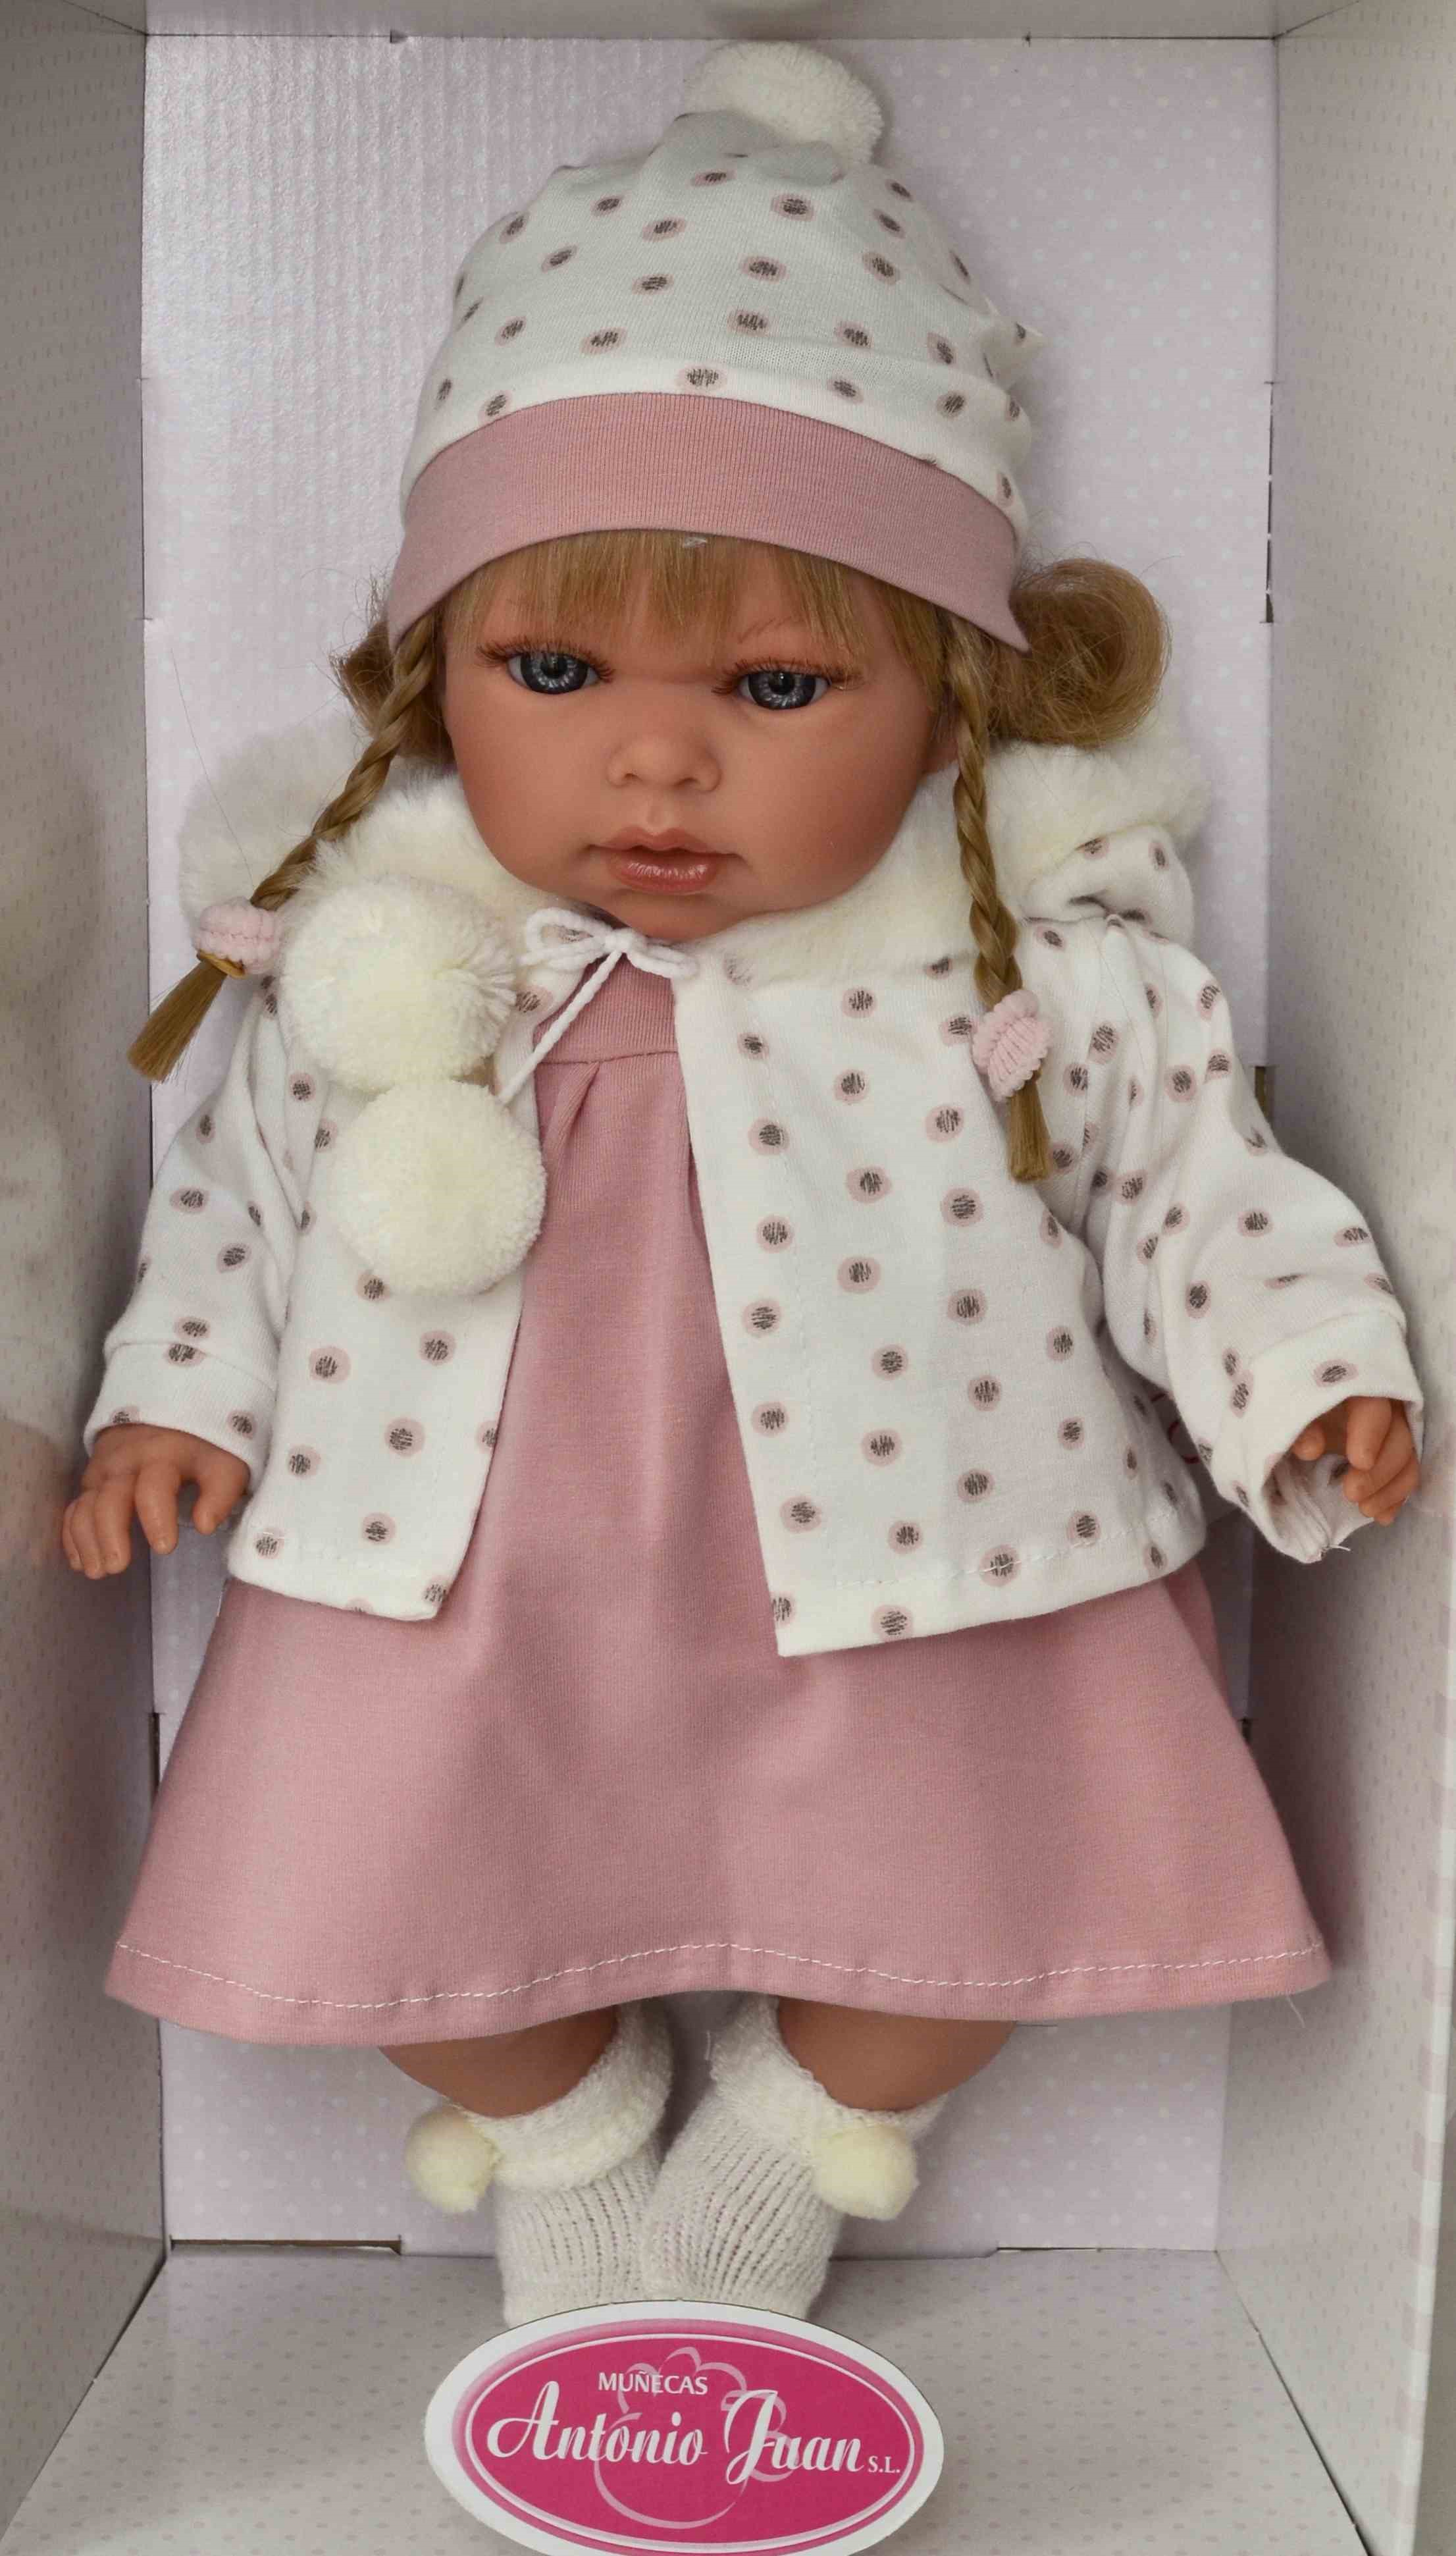 Realistická panenka Antonio Juan - holčička Any s copánky od firmy Antonio Juan 